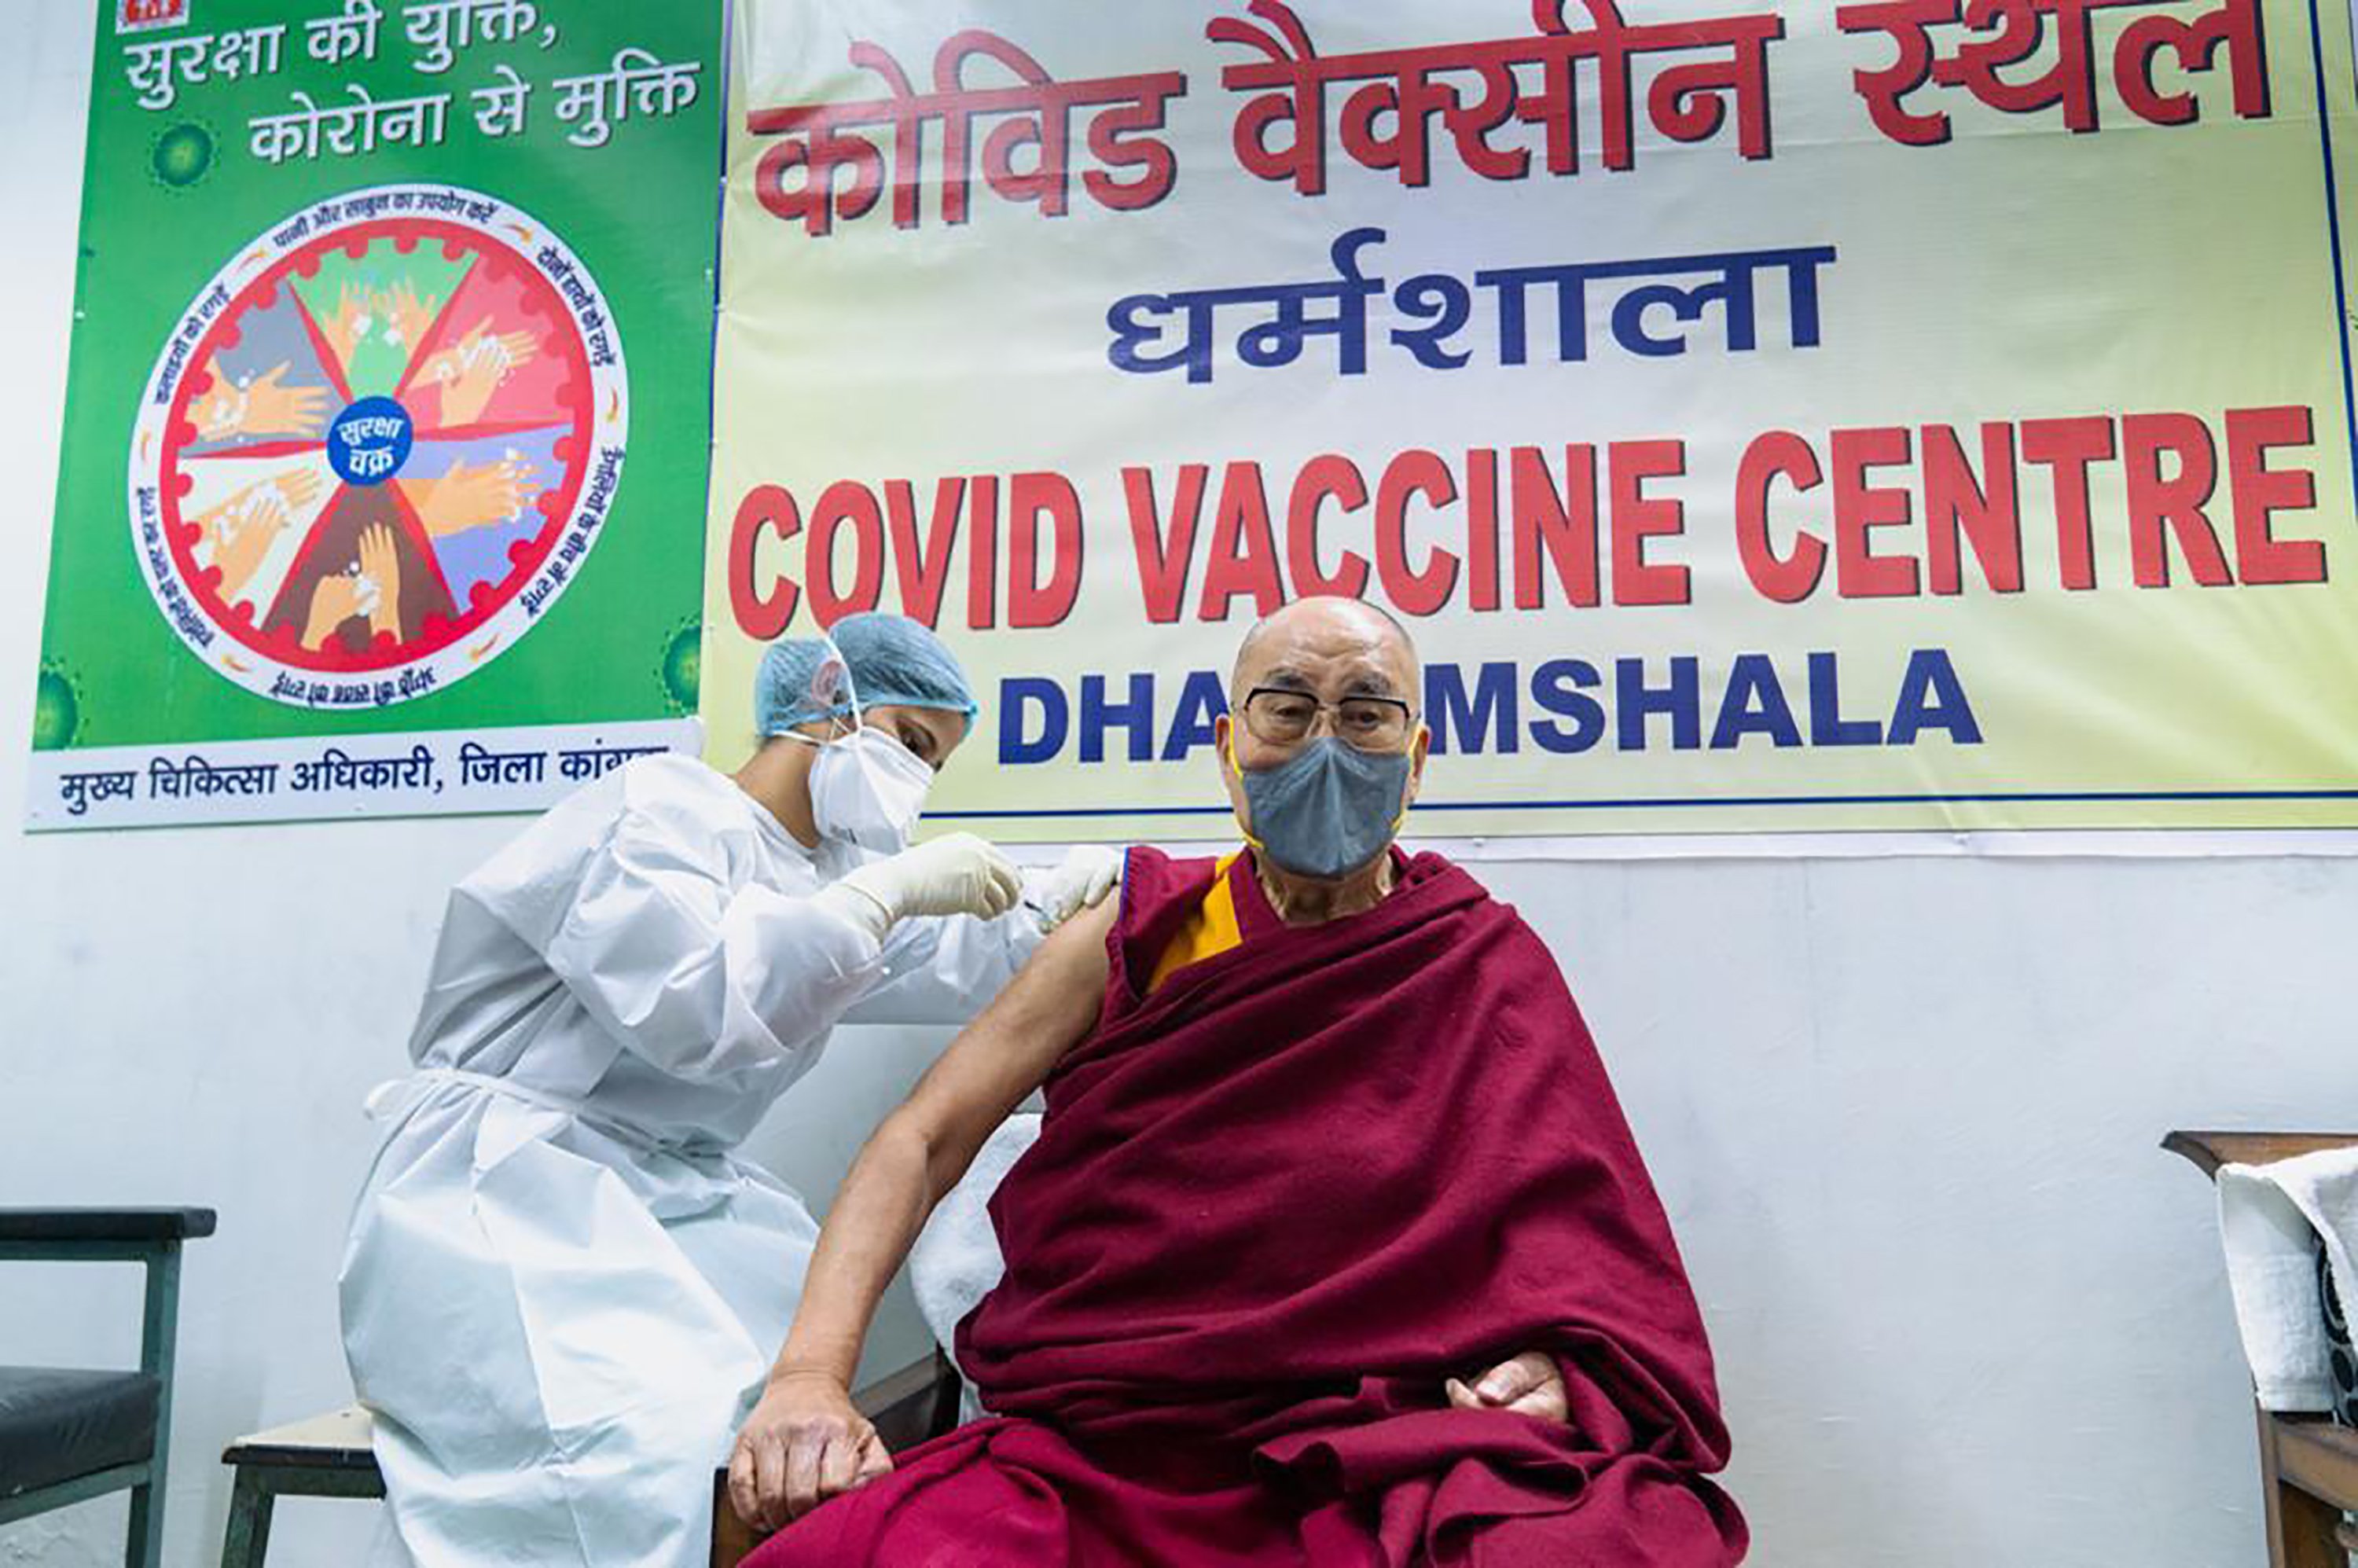 Tibetan spiritual leader Dalai Lama gets vaccinated